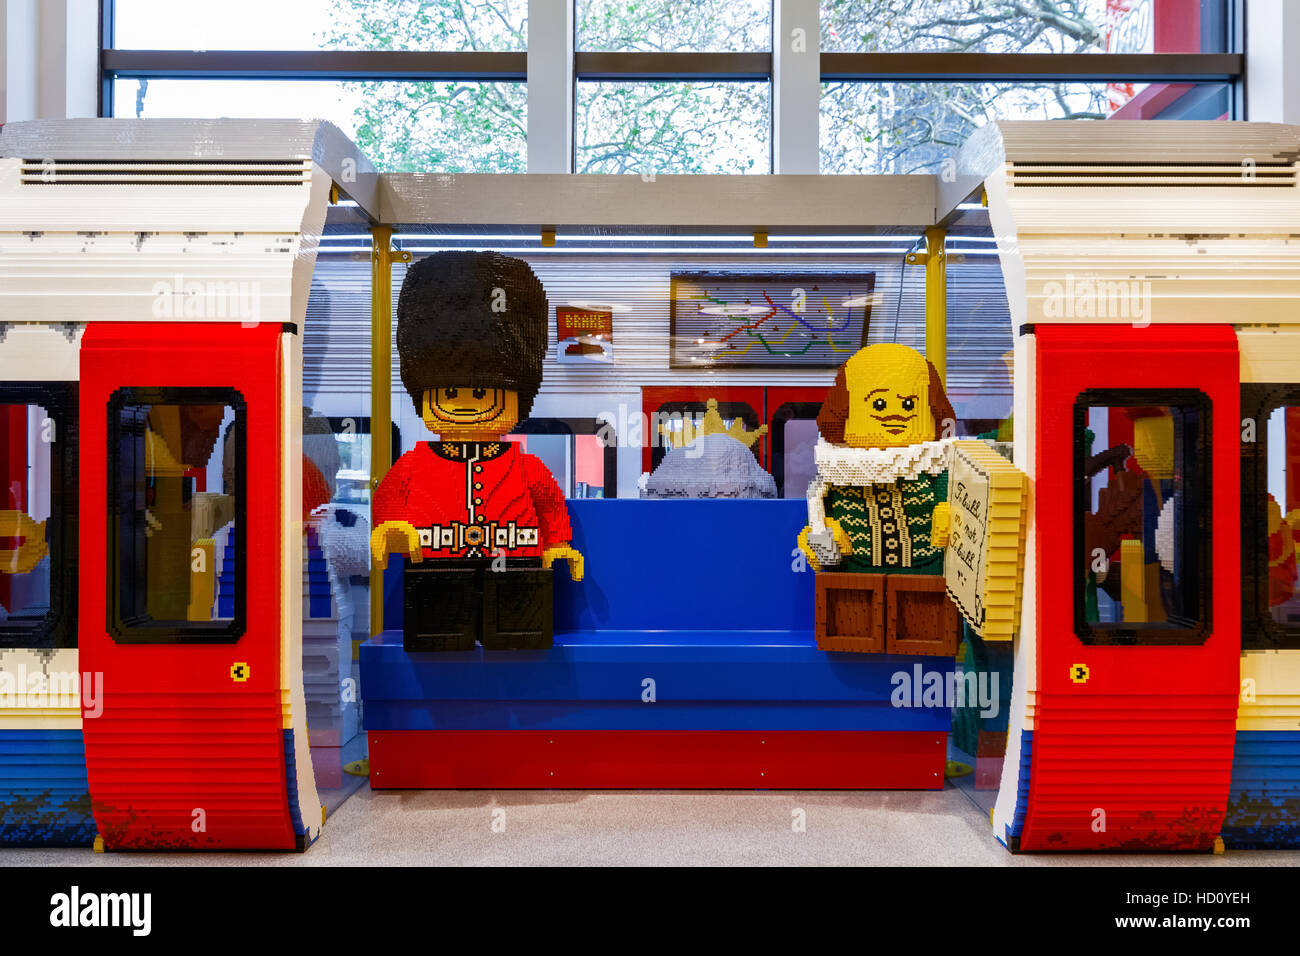 London, UK - 22. November 2016 - London unterirdisch aus Legosteinen gebaut in die weltweit größte LEGO Store angezeigt Stockfoto